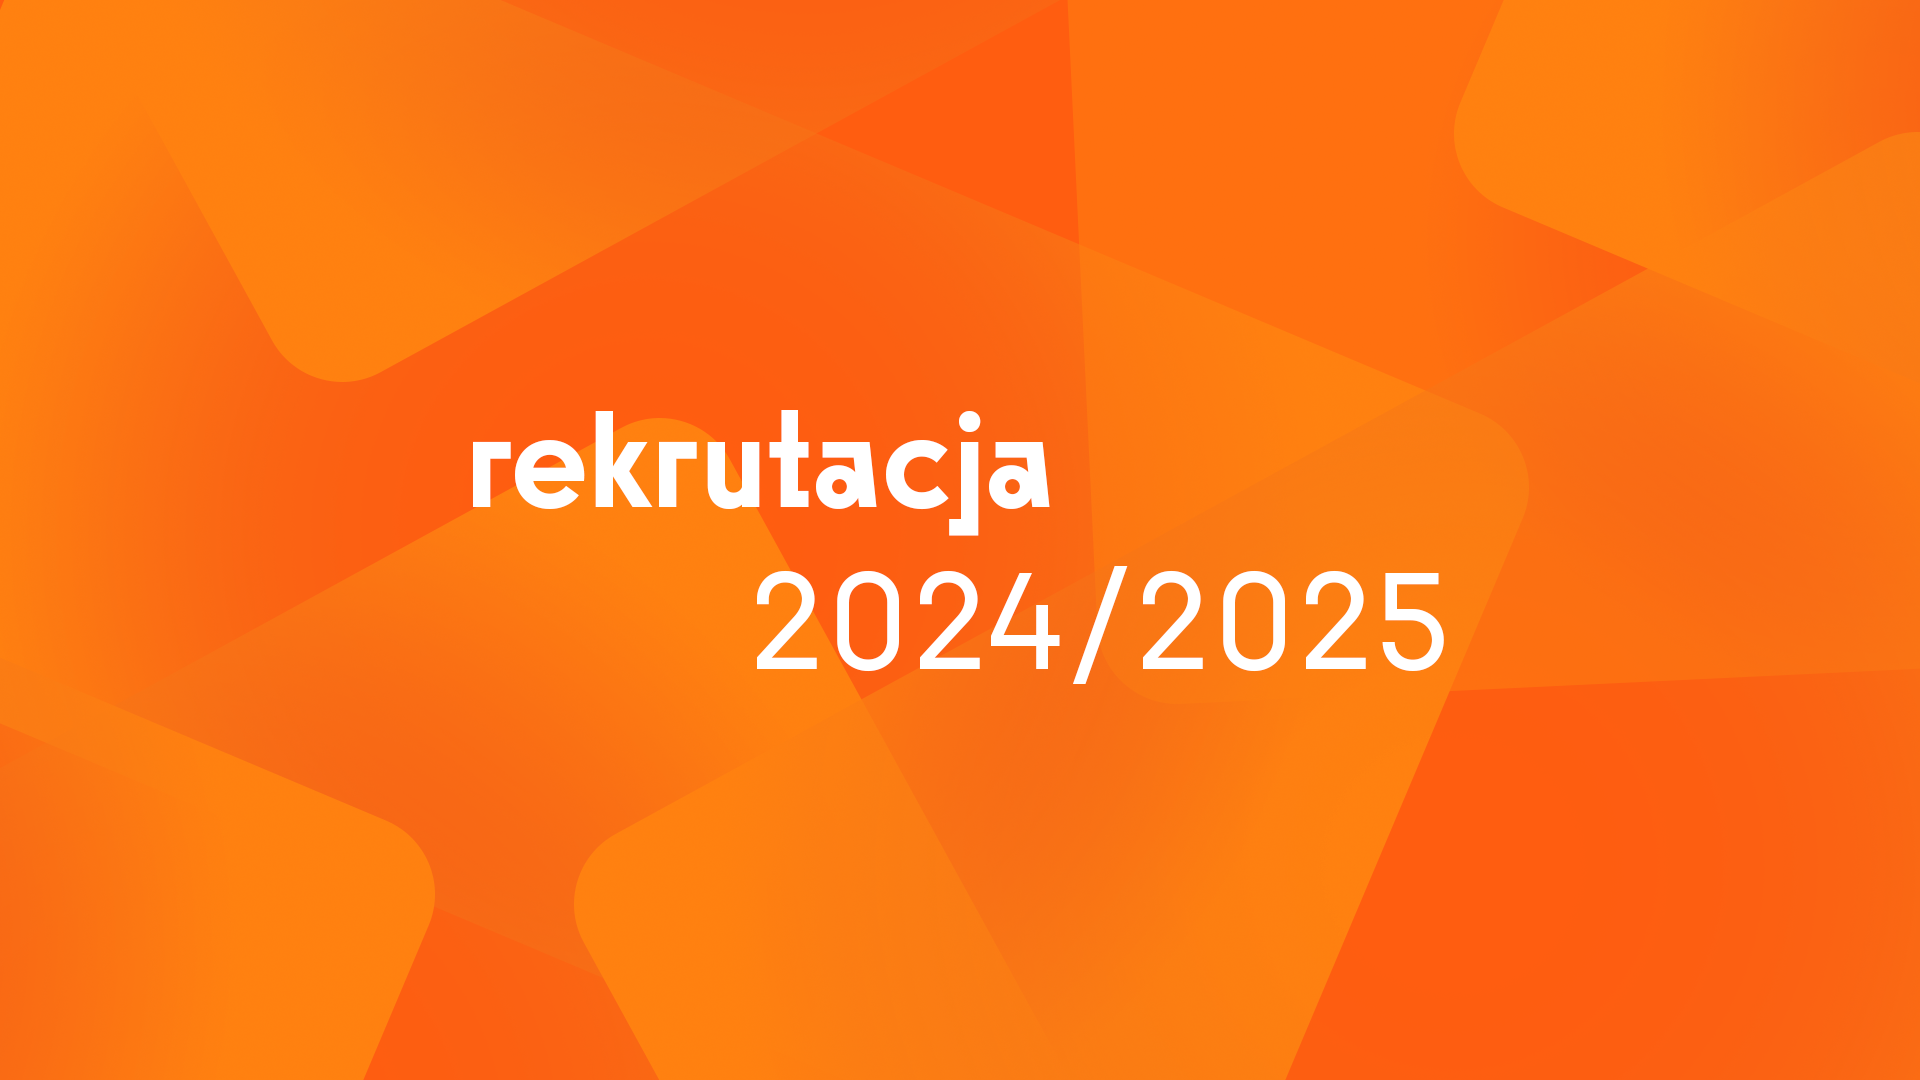 Tło pomarańczowe, na środku napis „Rekrutacja 2024/2025"